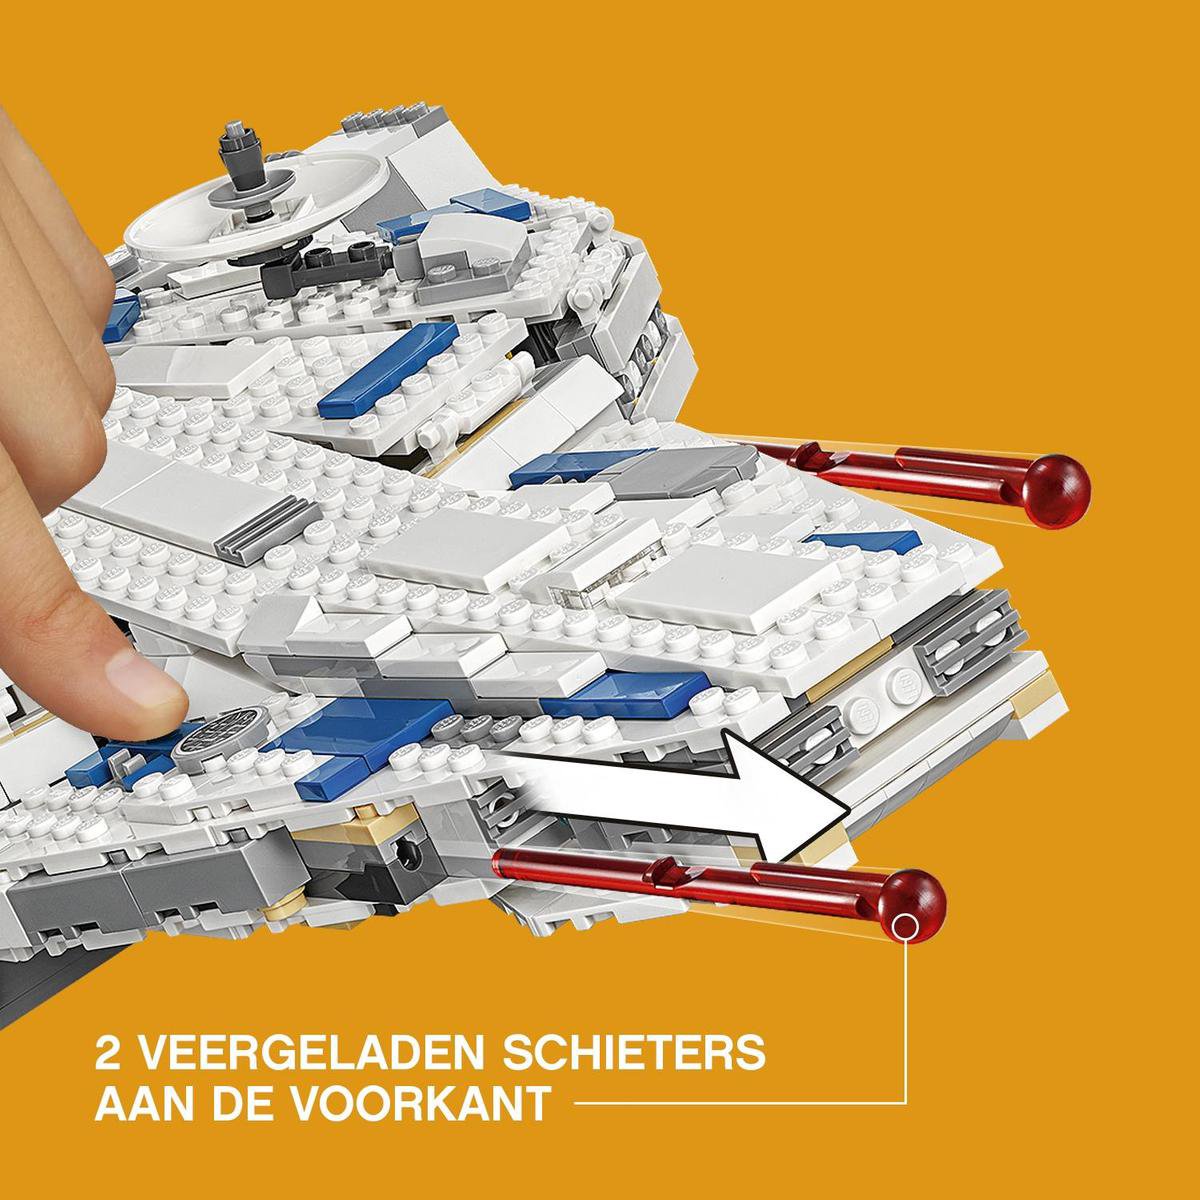 LEGO 75212 Le Faucon Millenium du raid de Kessel - LEGO Star Wars - Br  Condition Nouveau.